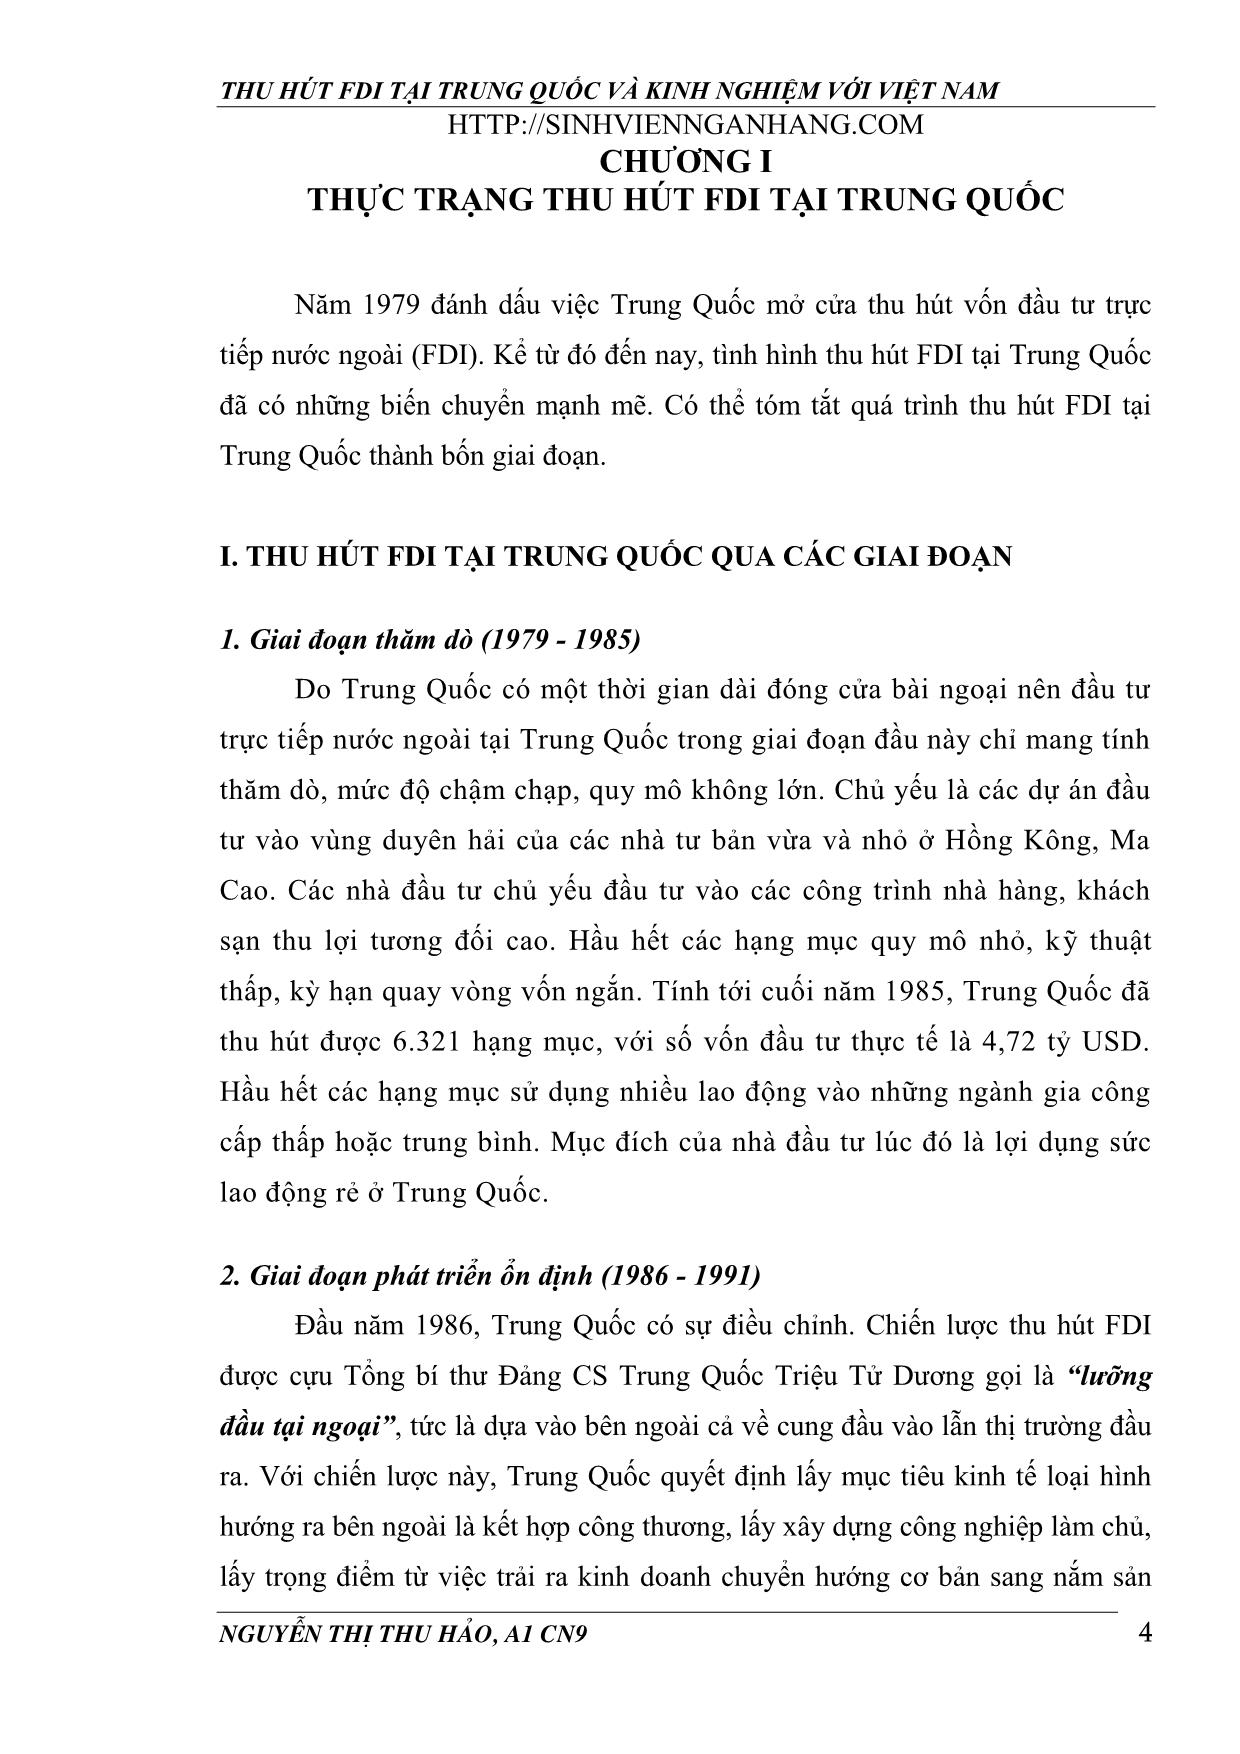 Khóa luận Thu hút FDI tại Trung Quốc và kinh nghiệm với Việt Nam trang 4